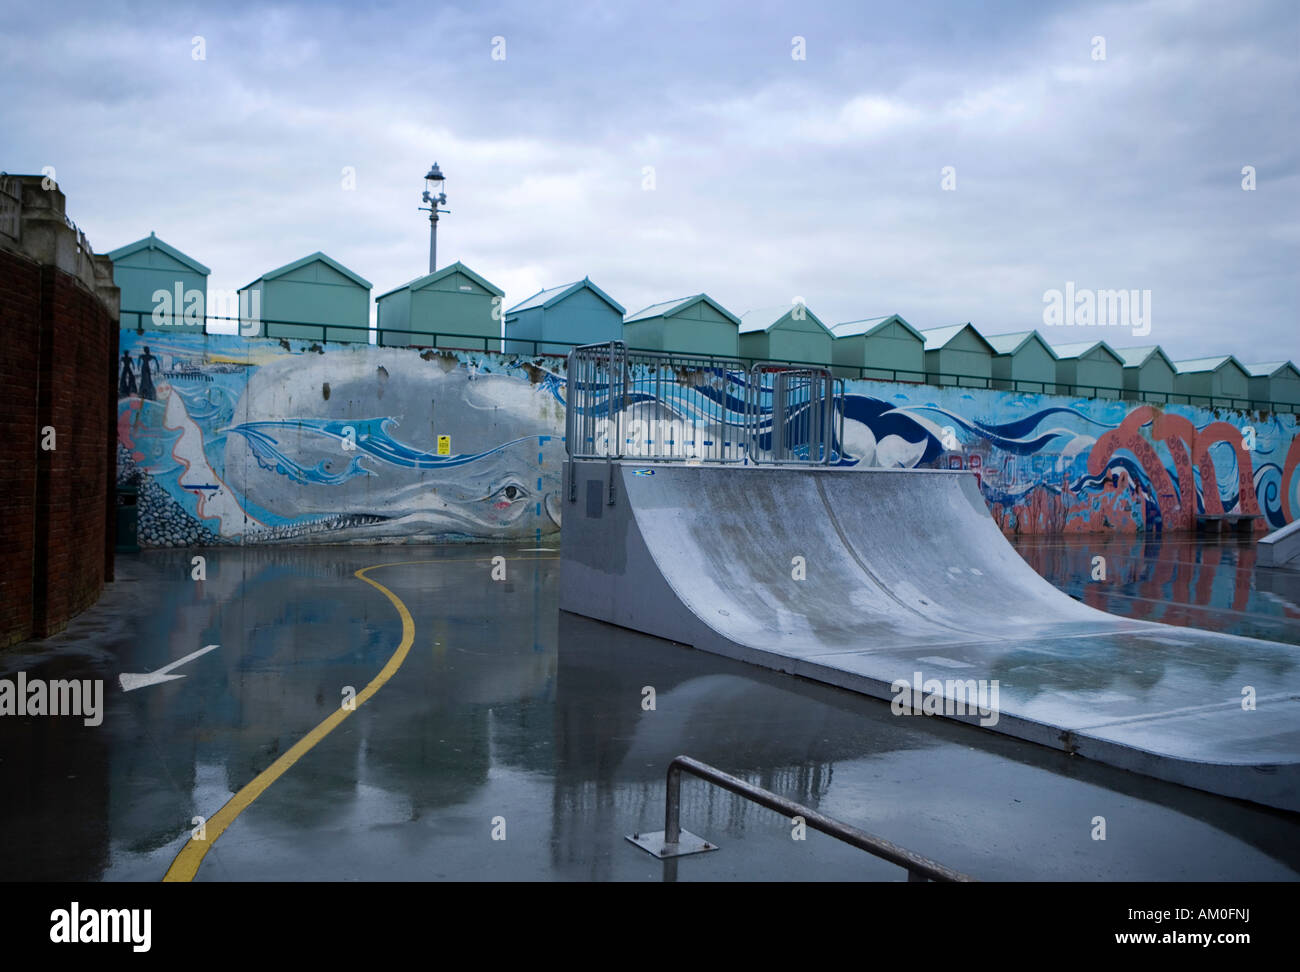 Skateboard parkähnlichen Areal mit Graffiti-Wände an der Hove Lagoon Hove England UK Stockfoto